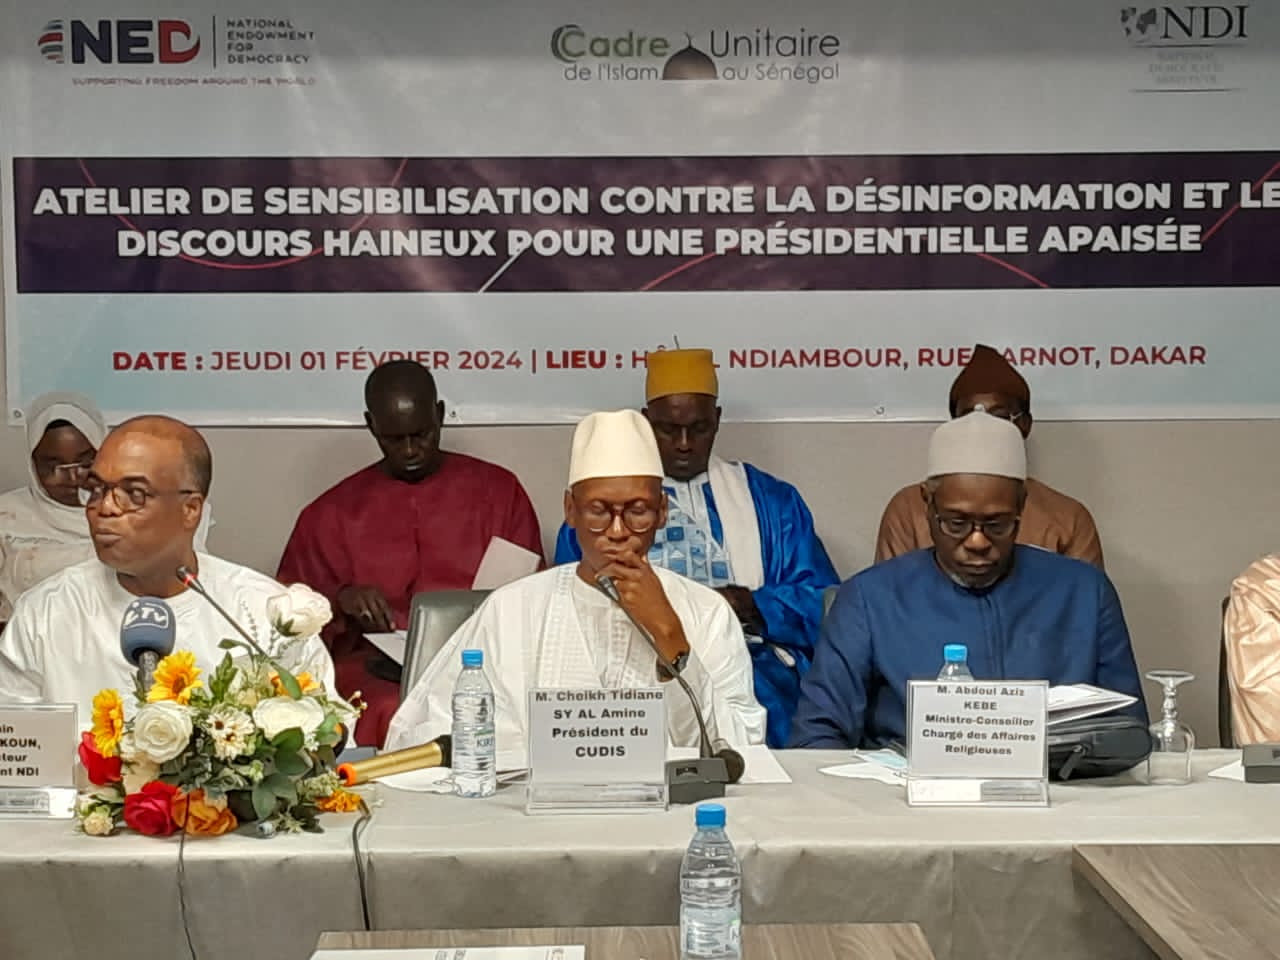 Sénégal : le Cadre Unitaire de l’Islam en mission de paix pour une présidentielle apaisée.